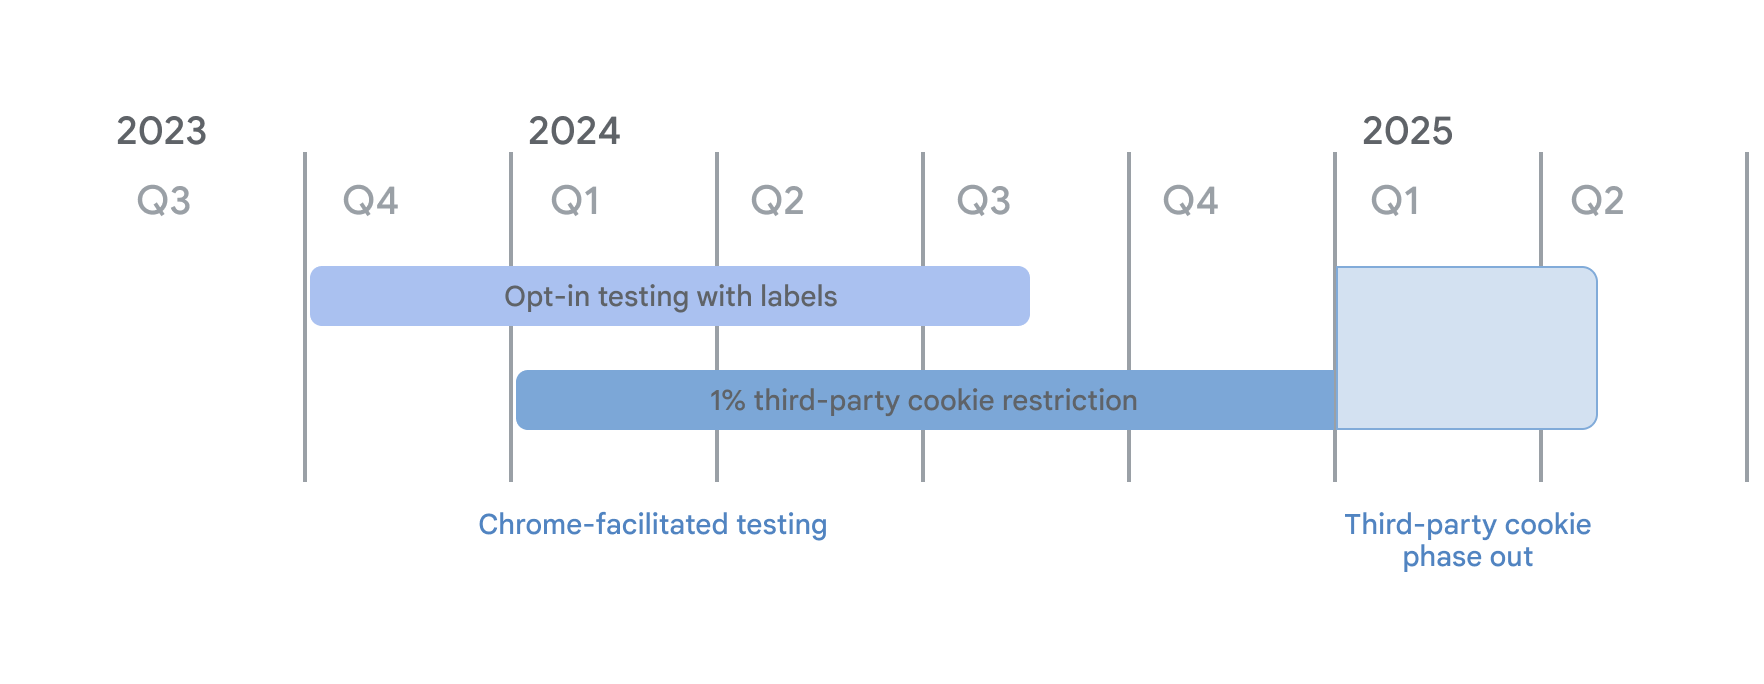 المخطط الزمني لإيقاف ملفات تعريف الارتباط التابعة لجهات خارجية في إطار الاختبارات التي سهّلها Chrome، بدأ اختبار الموافقة مع التصنيفات في الربع الأخير من عام 2023 اعتبارًا من 4 كانون الثاني (يناير) 2024، وبدأنا بفرض القيود المفروضة على الشركات التابعة لجهات خارجية والتي تبلغ% 1. ويستمر الإيقاف حتى الربع الأول من عام 2025 عند بدء الإيقاف التدريجي لملفّات تعريف الارتباط التابعة لجهات خارجية.